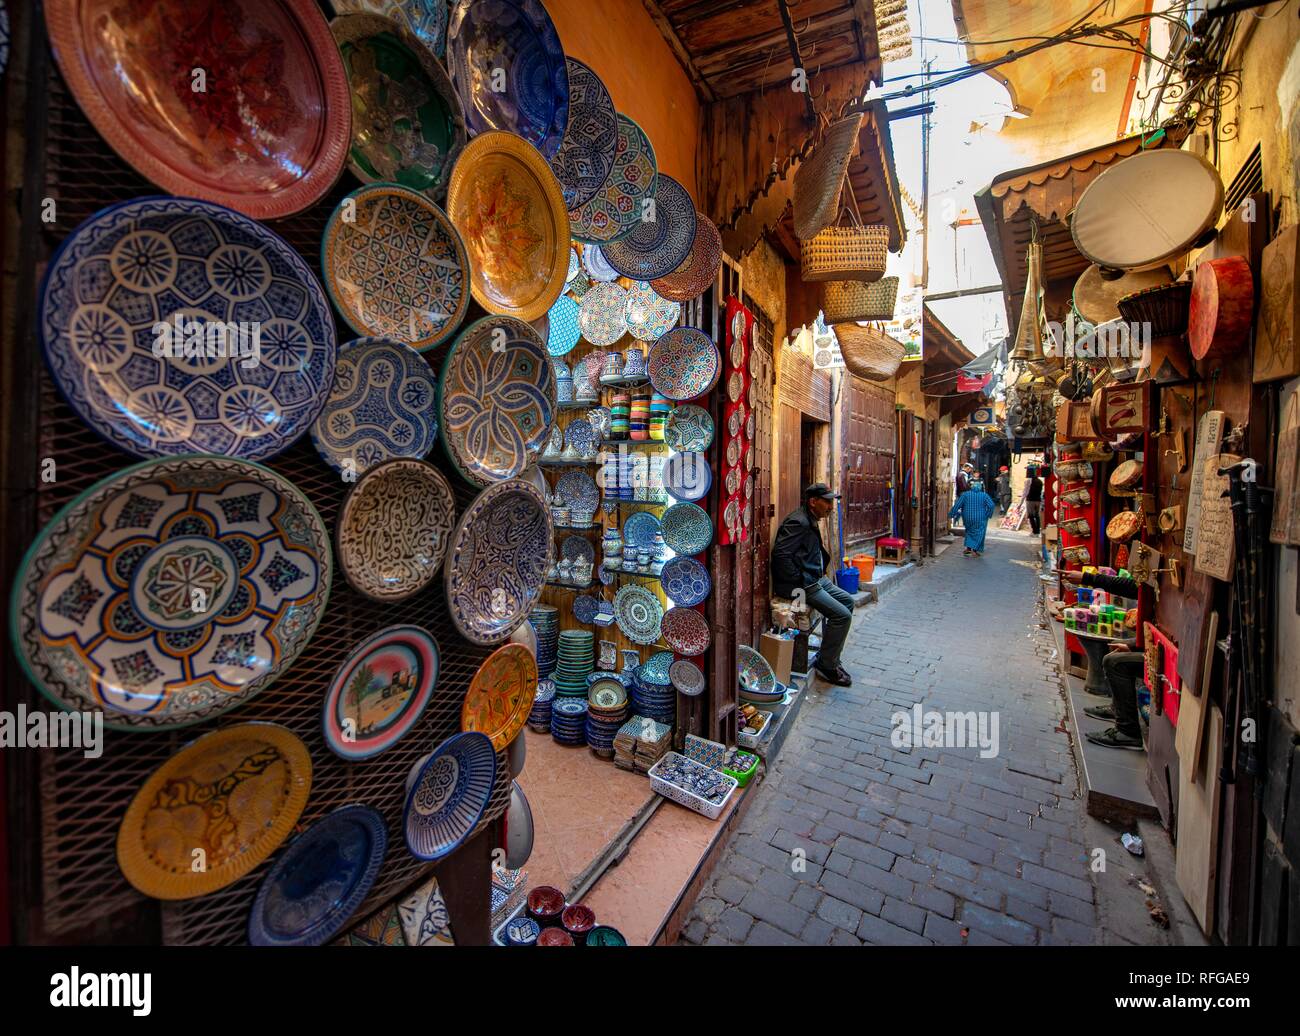 Les plaques peintes de couleurs vives et des carreaux, magasin d'artisanat, ruelle étroite, Fès Médina, Fès, Maroc Banque D'Images